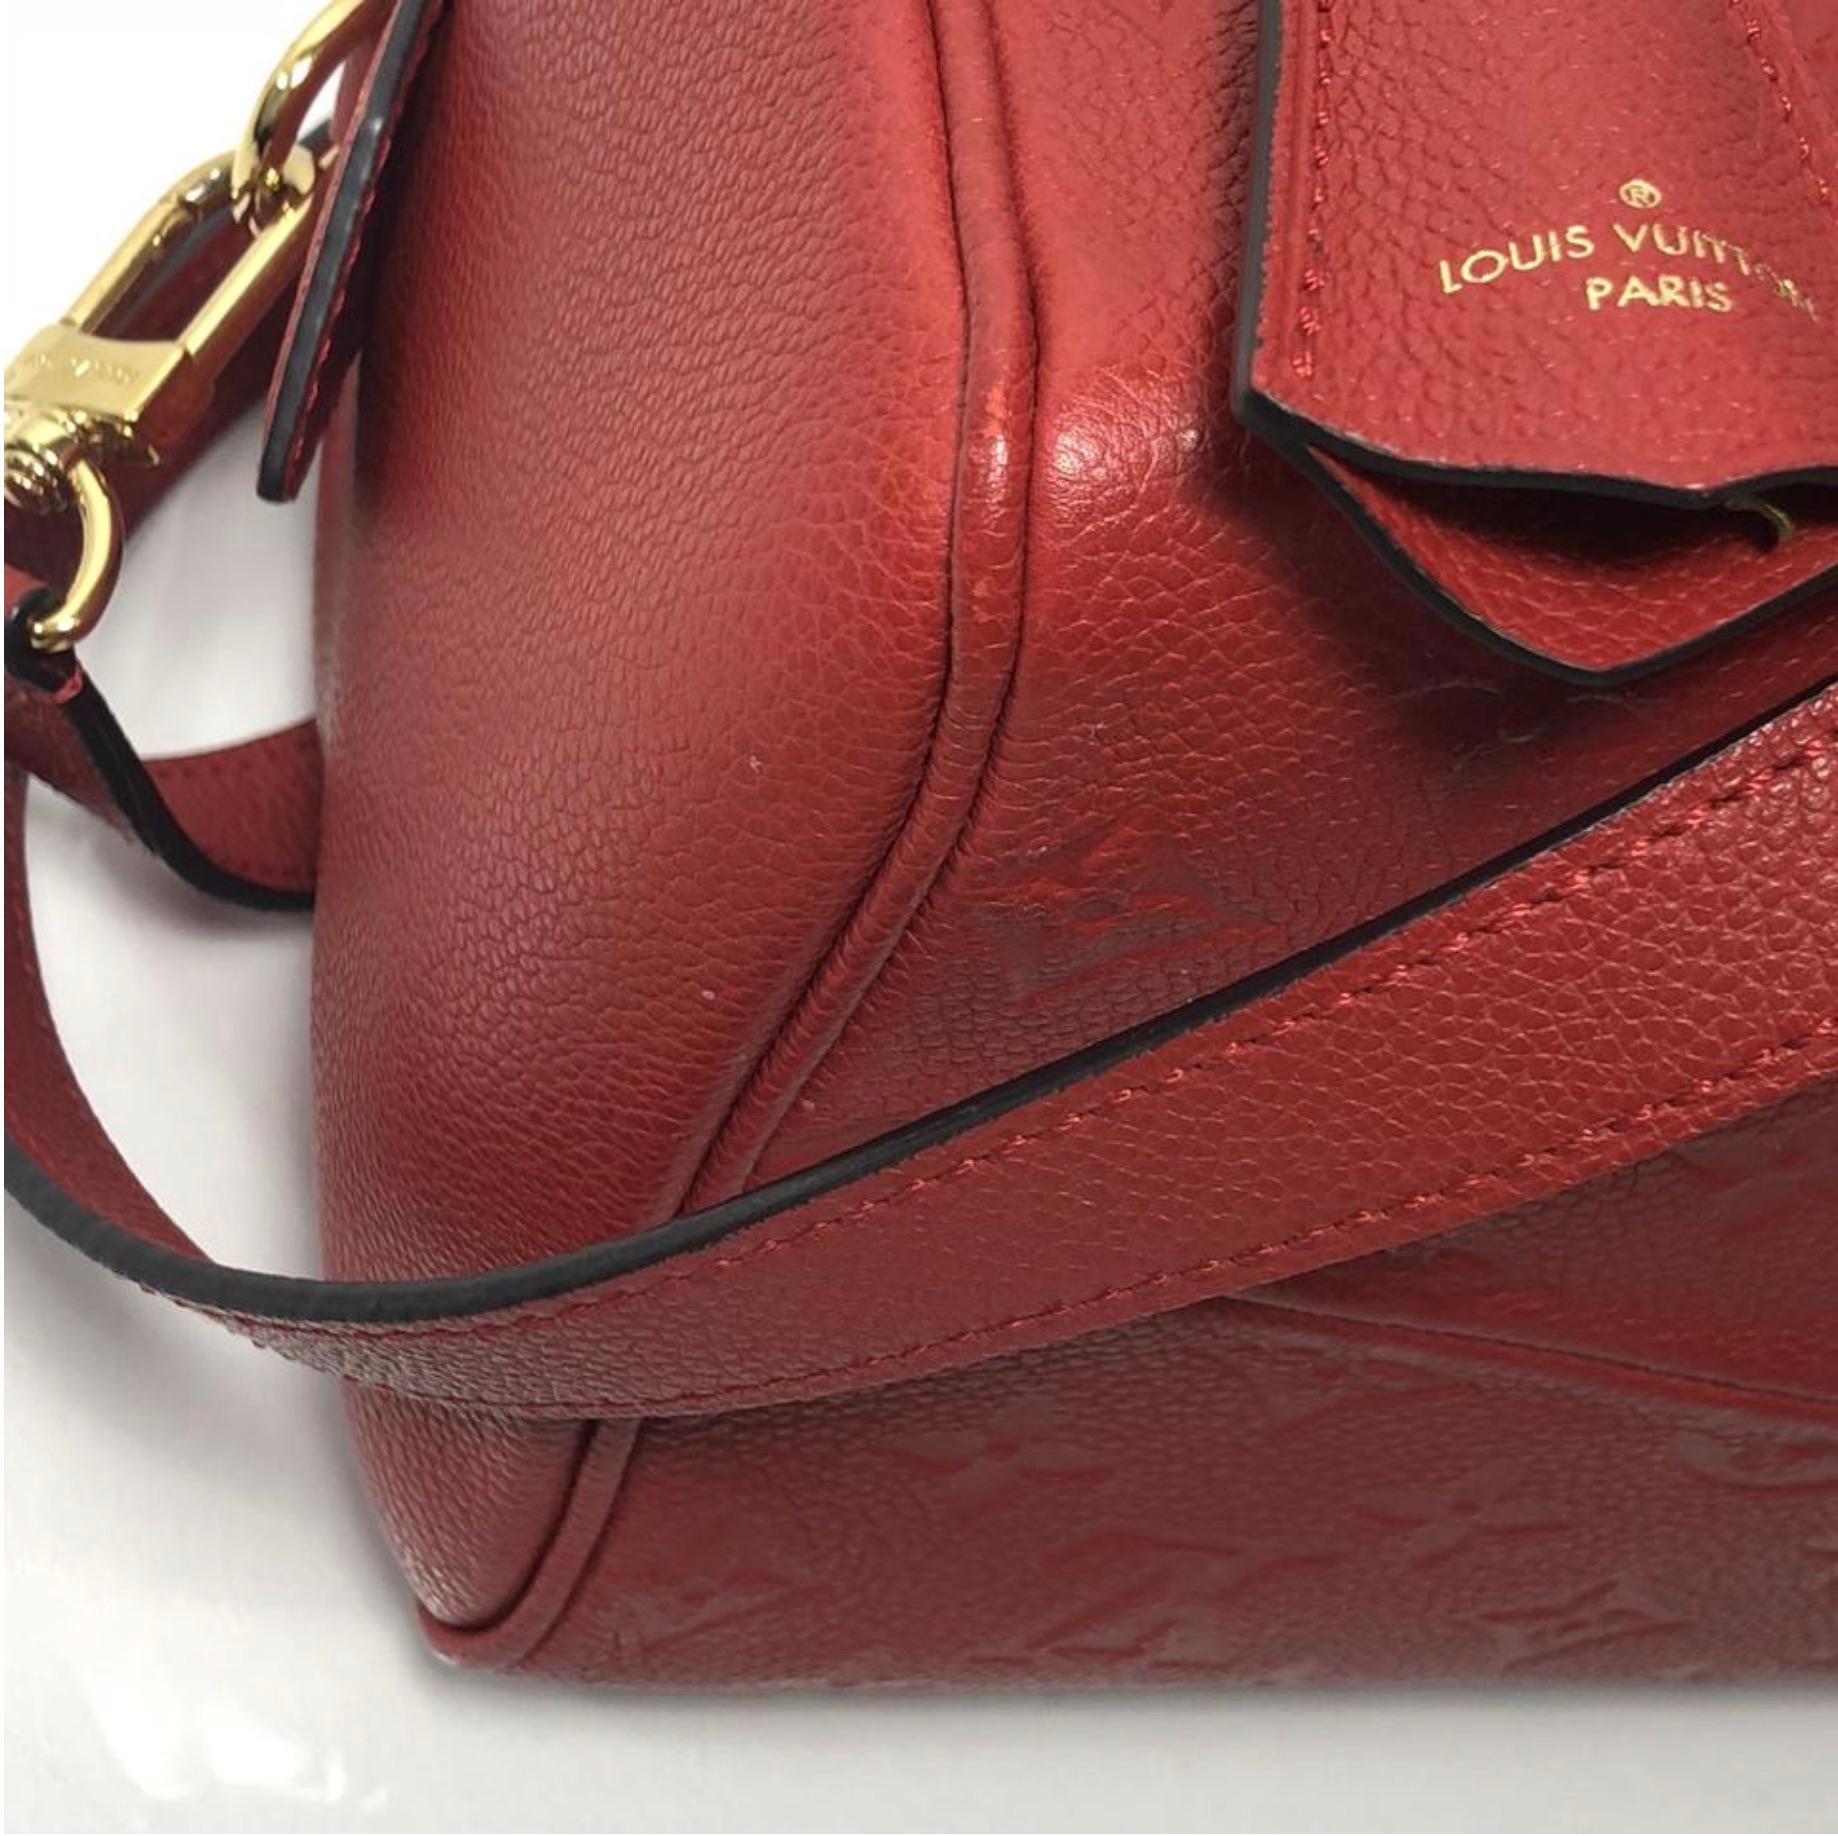 Louis Vuitton Empreinte Speedy 25 in Red Satchel Handbag For Sale 3